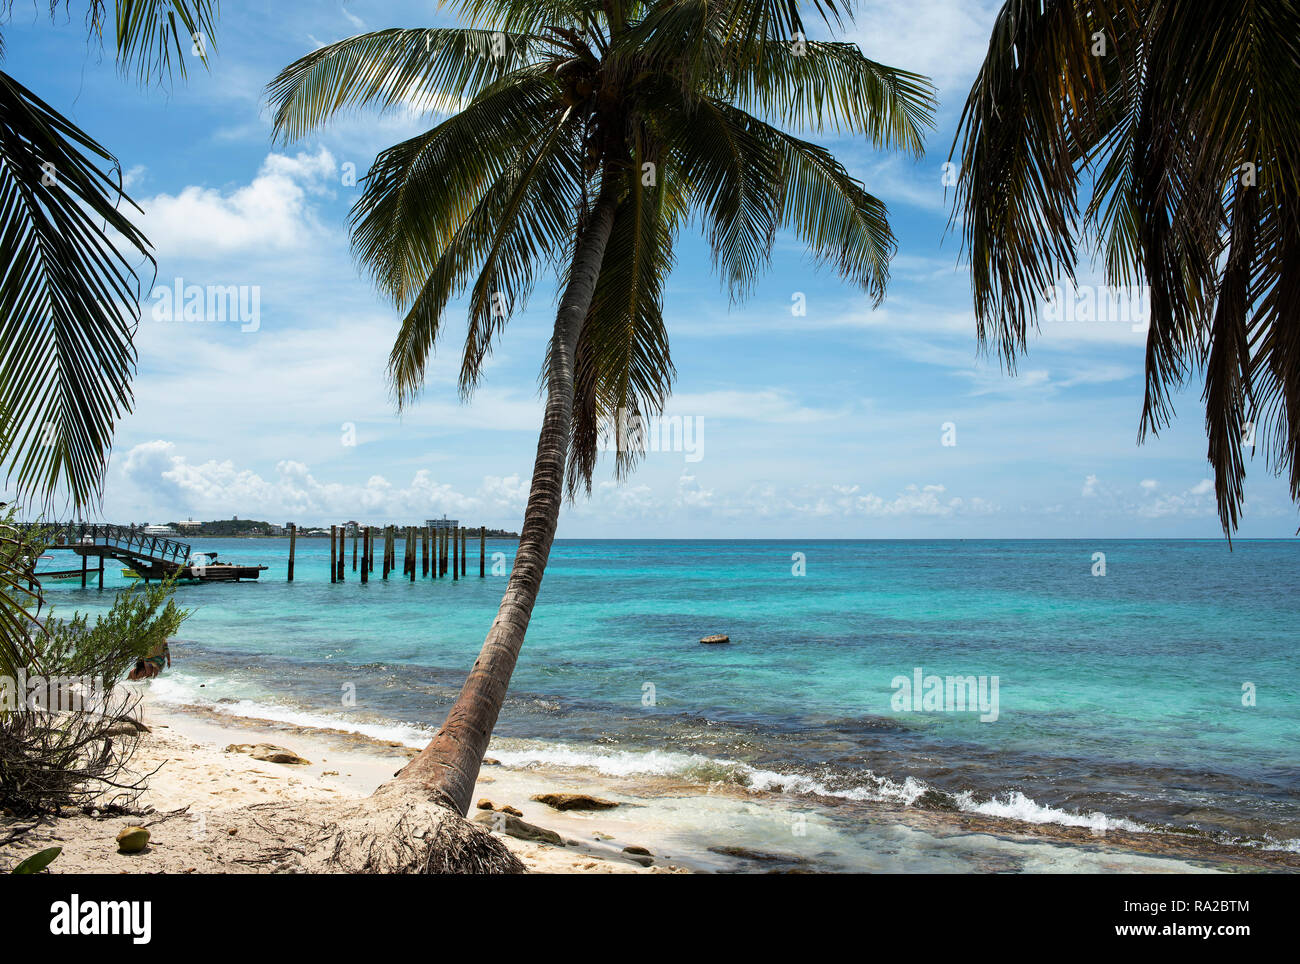 L'eau turquoise et les palmiers. Caribbean travel destination : Johnny Cay près de l'île de San Andrés, Colombie. Oct 2018 Banque D'Images